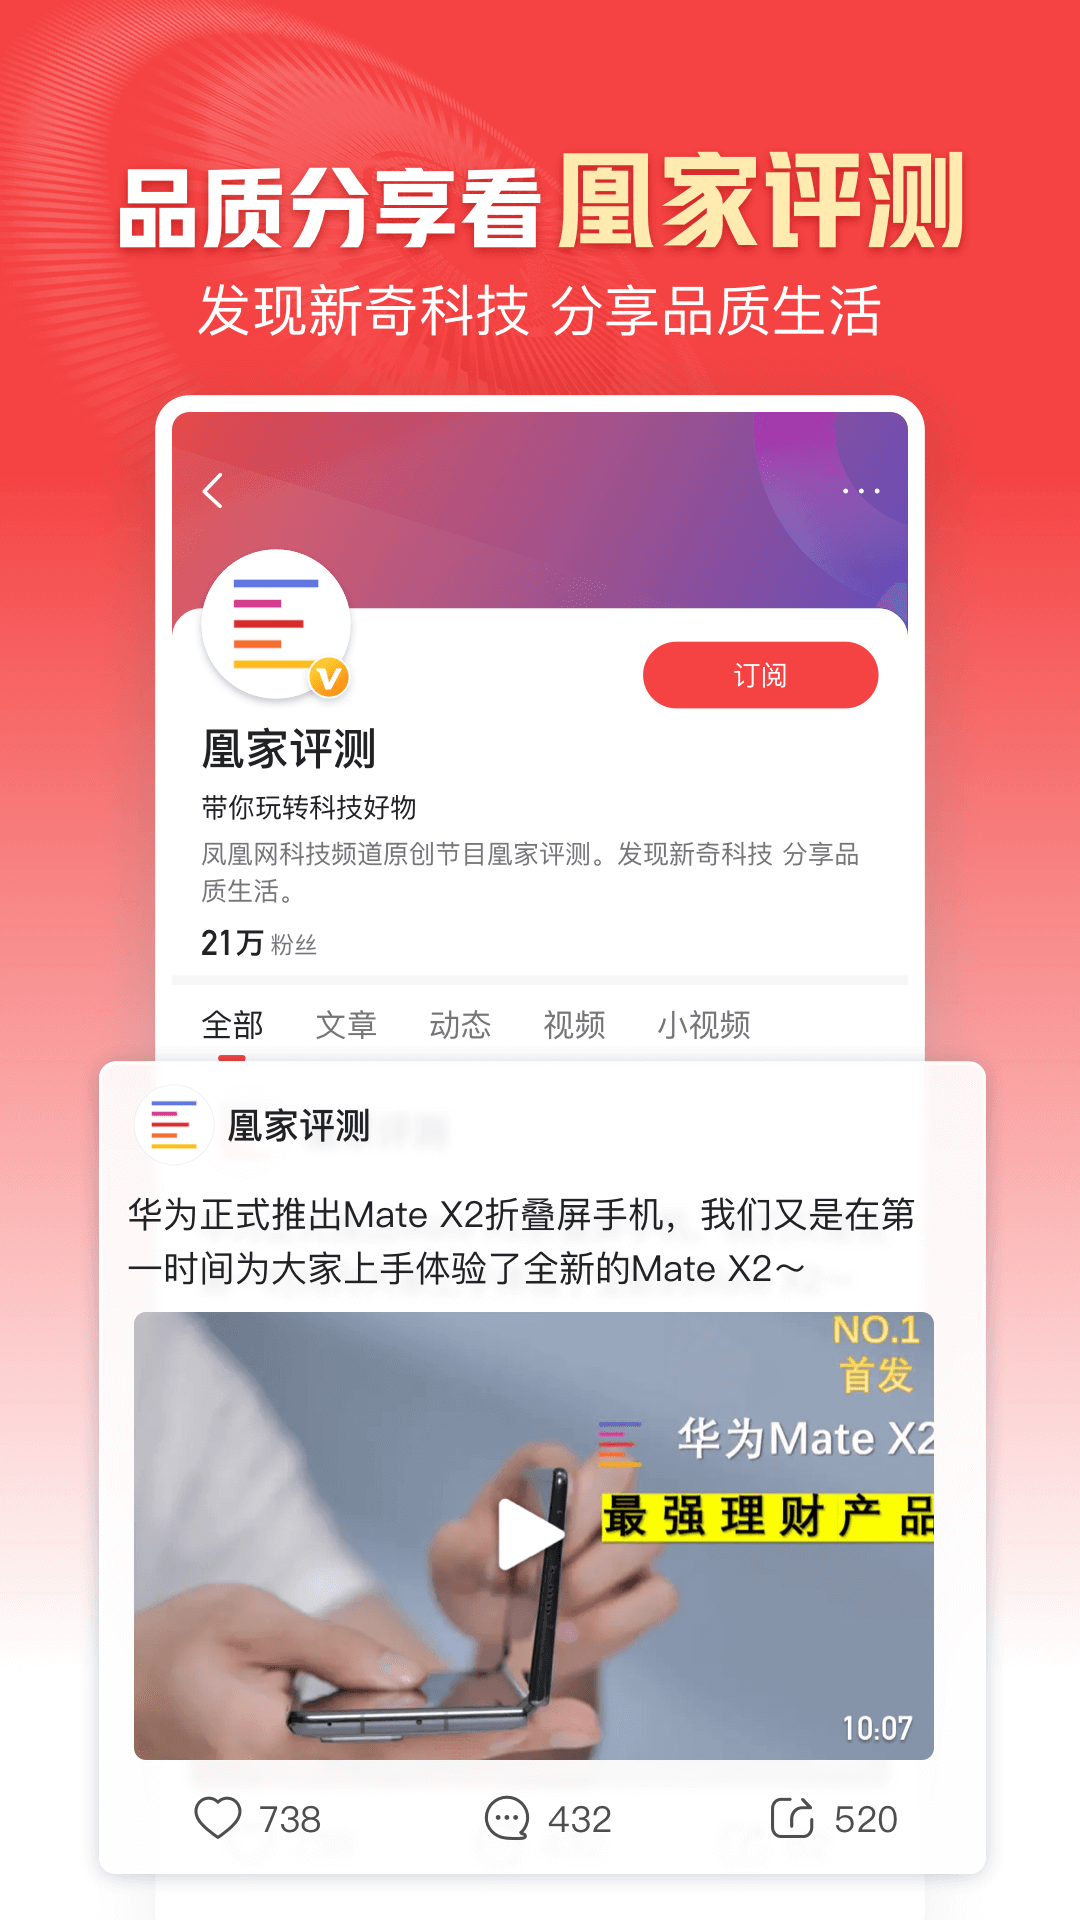 凤凰新闻app2